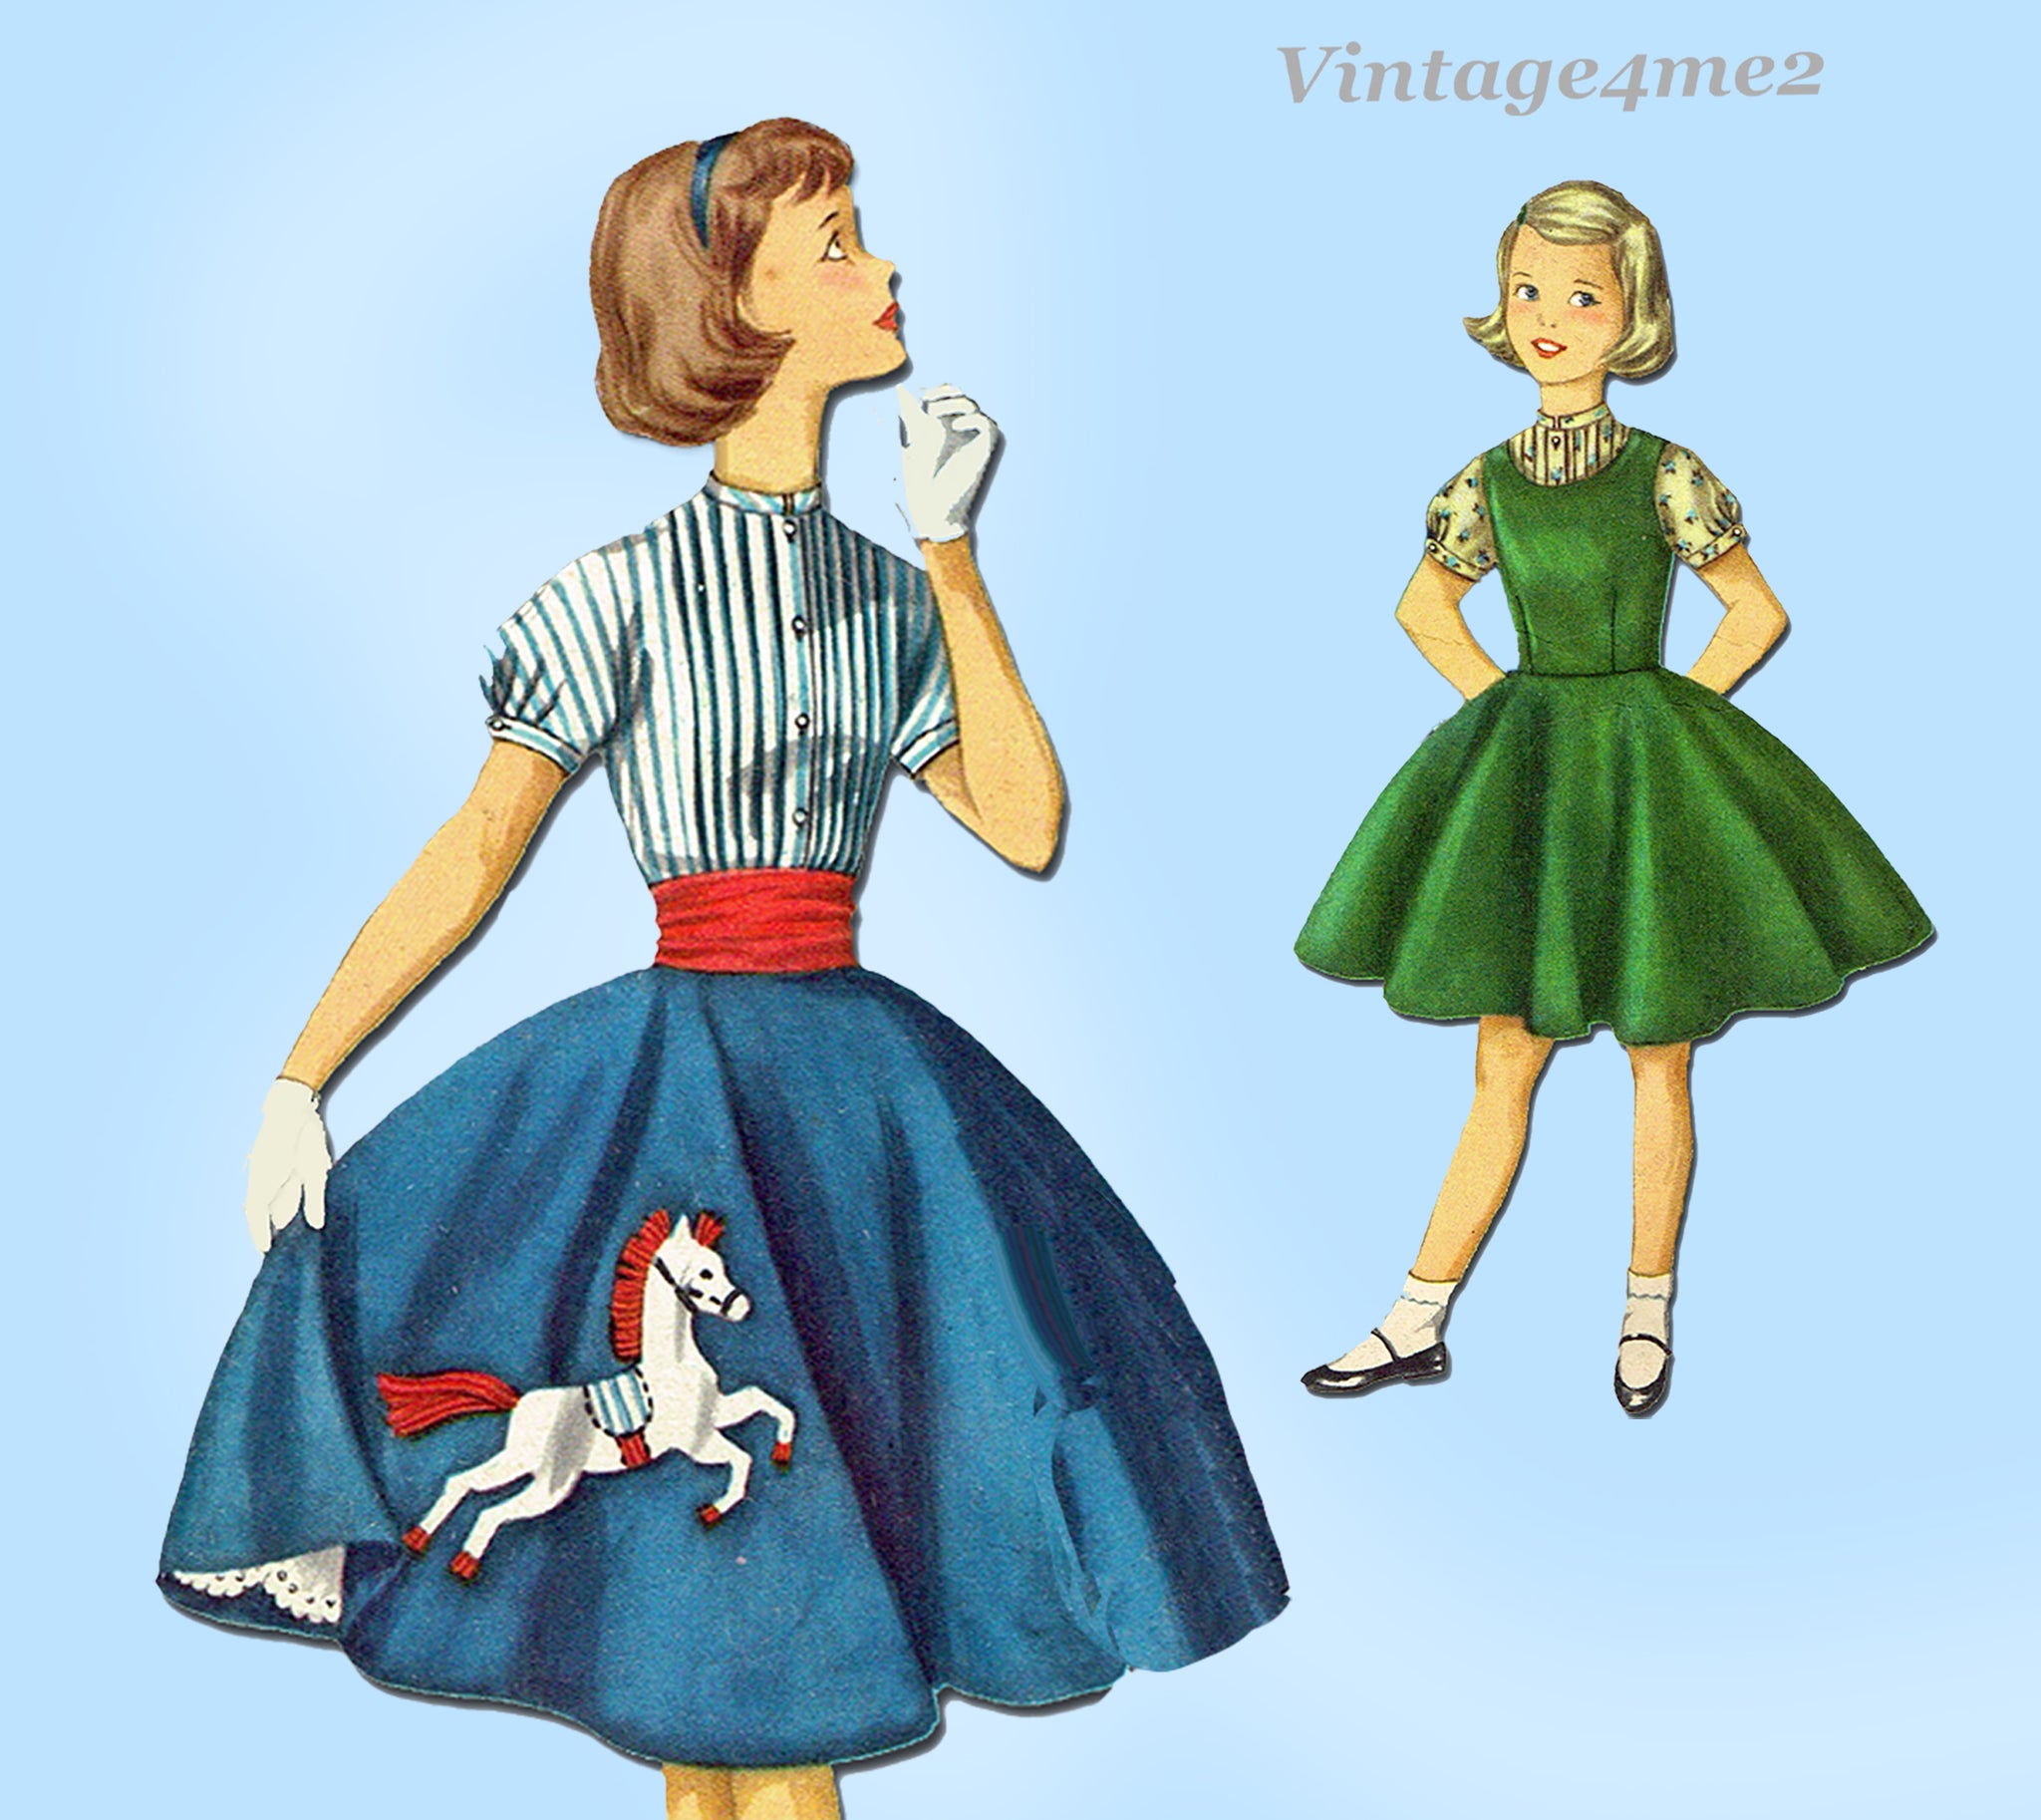 1950s Vintage Simplicity Sewing Pattern 1741 Cute Girls Poodle Skirt   Vintage4me2